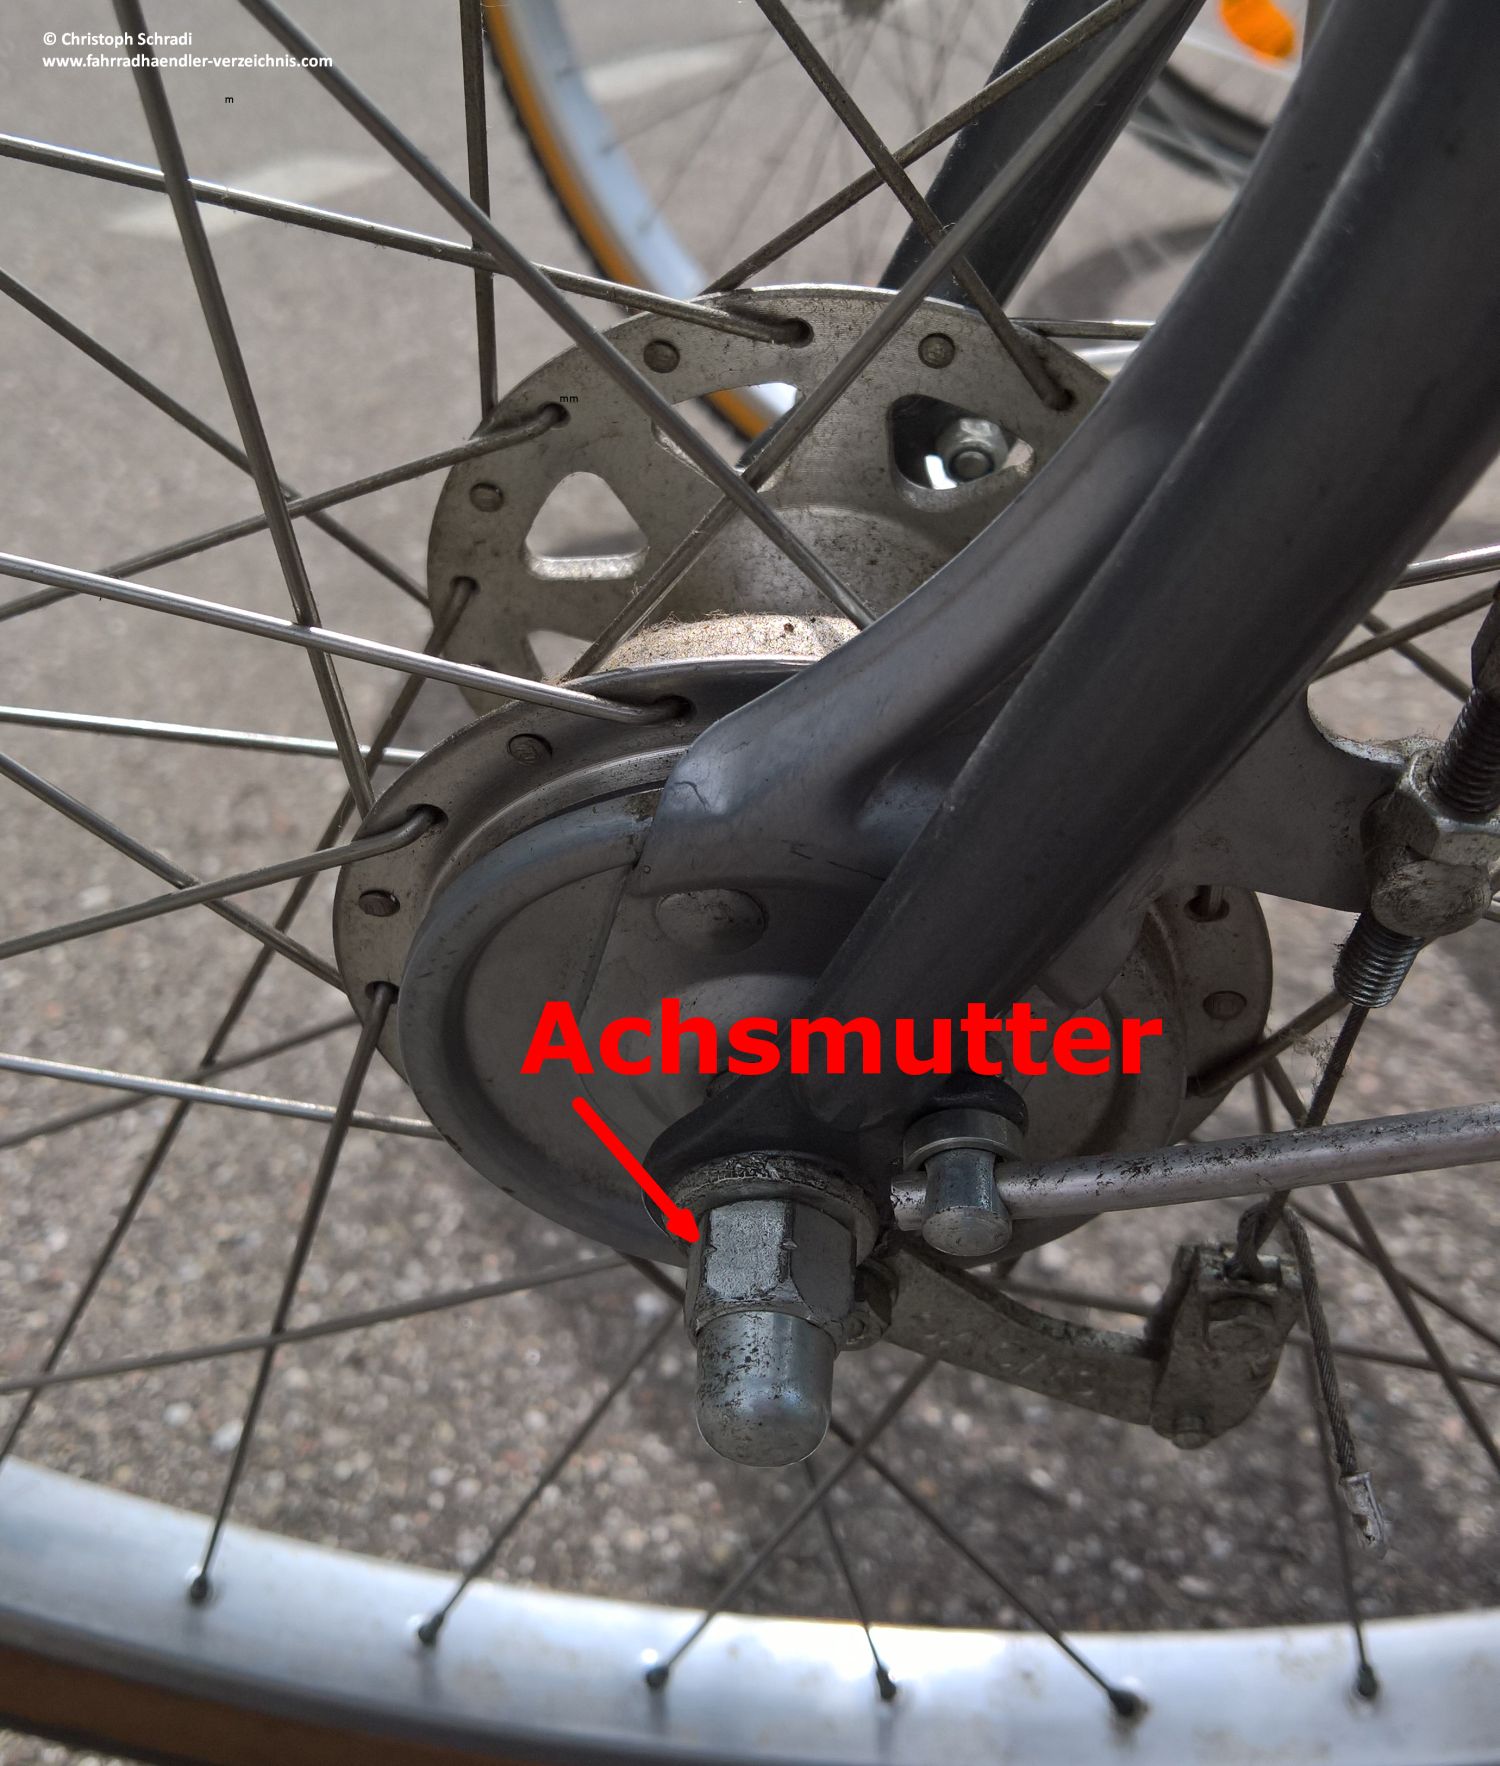 Achsmutter am Fahrrad eingebaut - Sicherung des Laufrades im Fahrradrahmen